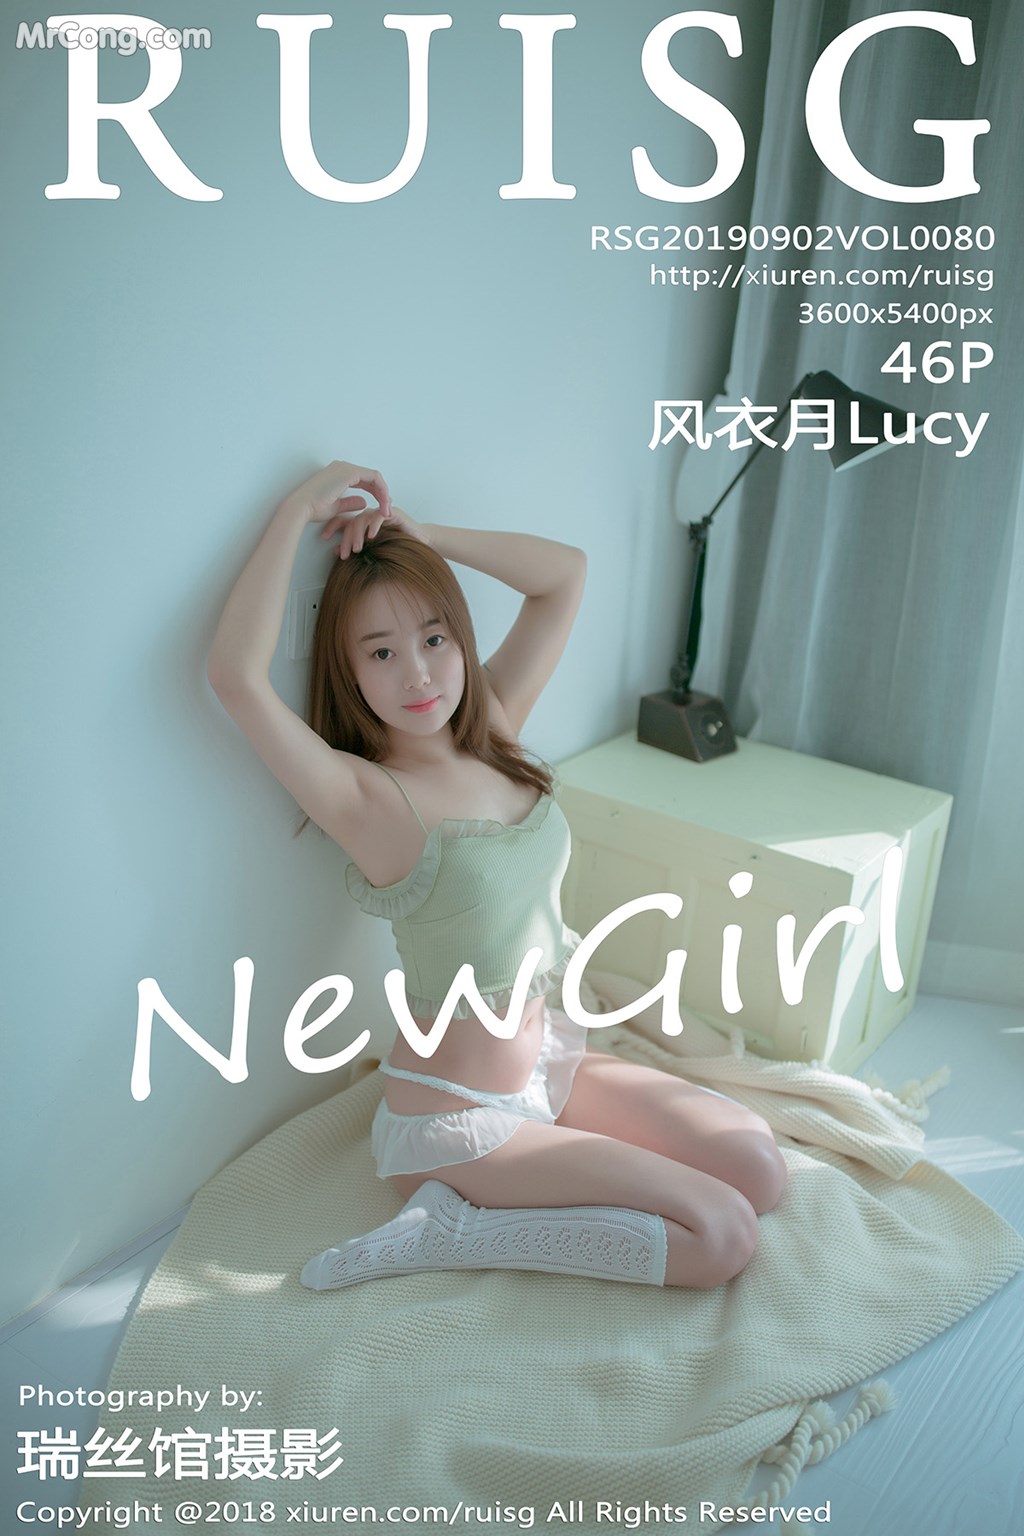 RuiSG Vol.080: 风衣 月 Lucy (47 photos)